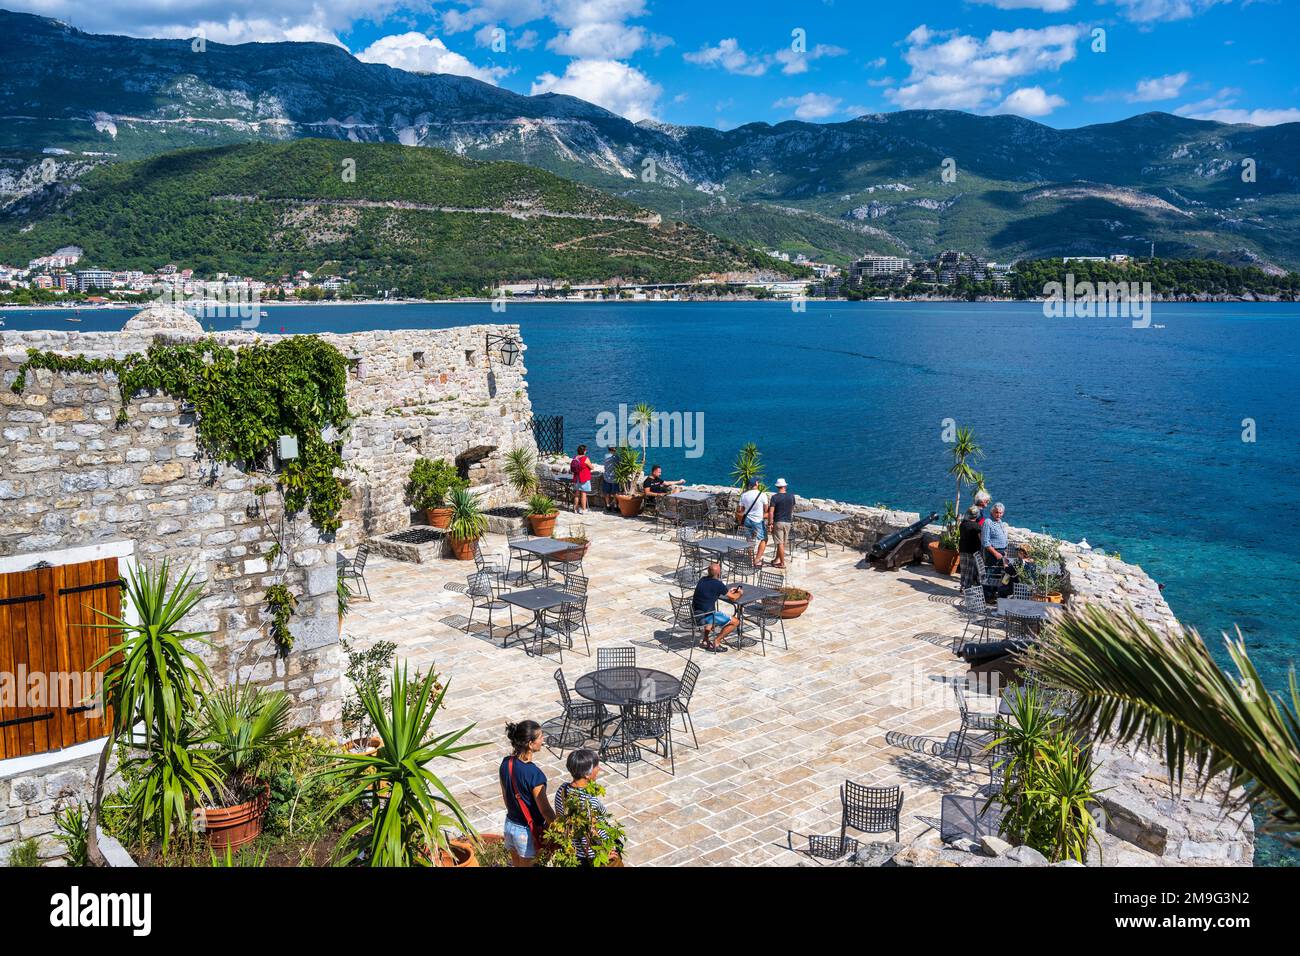 Café en plein air dans la Citadelle de Budva avec une vue imprenable sur l'Adriatique depuis la vieille ville de Budva sur la côte Adriatique du Monténégro Banque D'Images